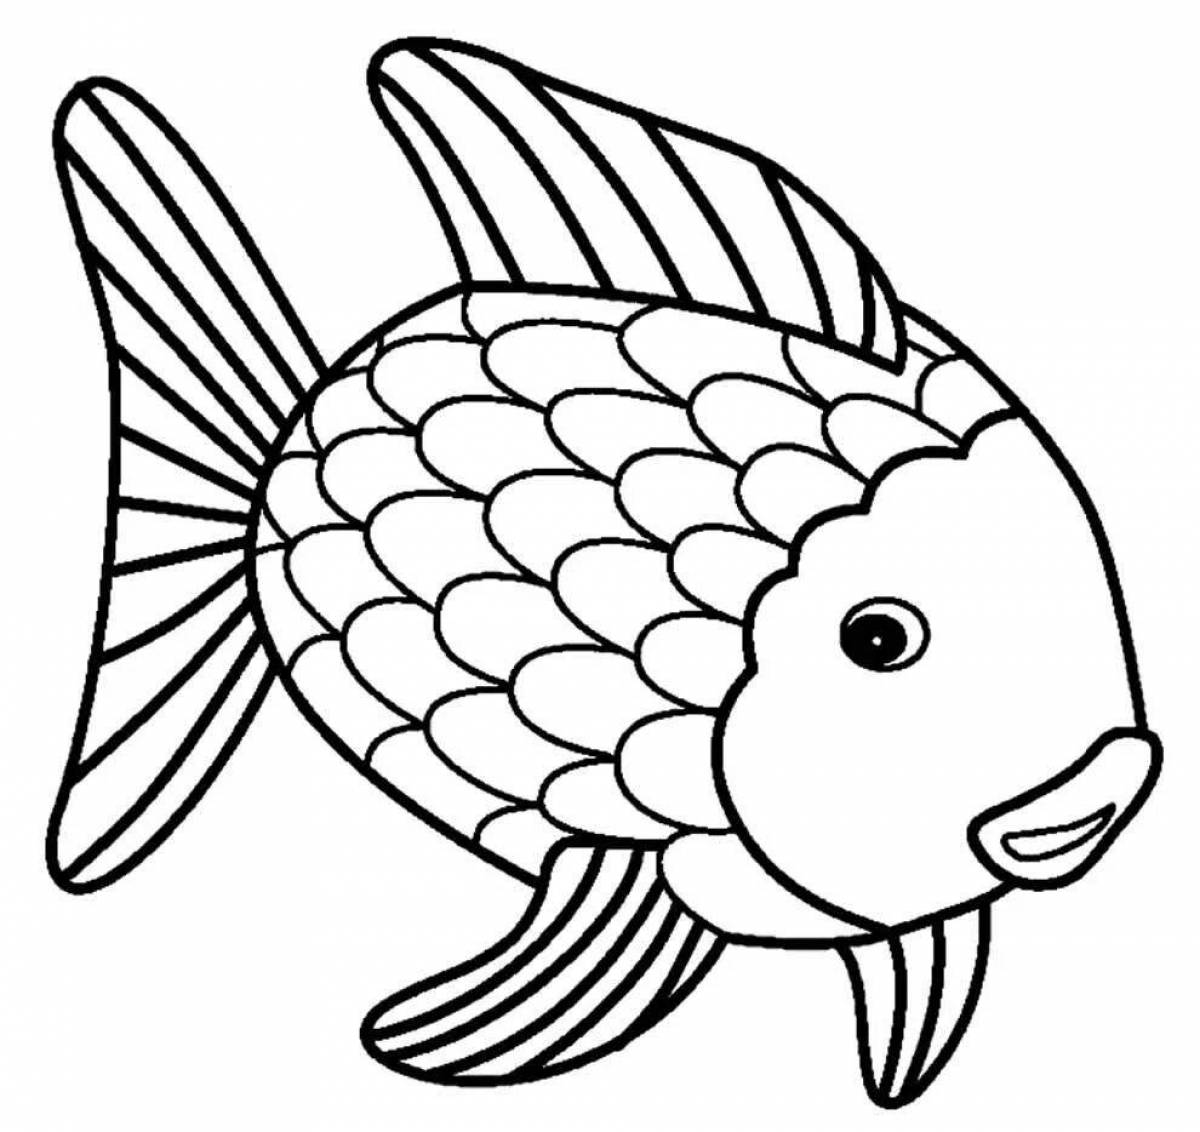 Привлекательная рыбка-раскраска для детей 6-7 лет